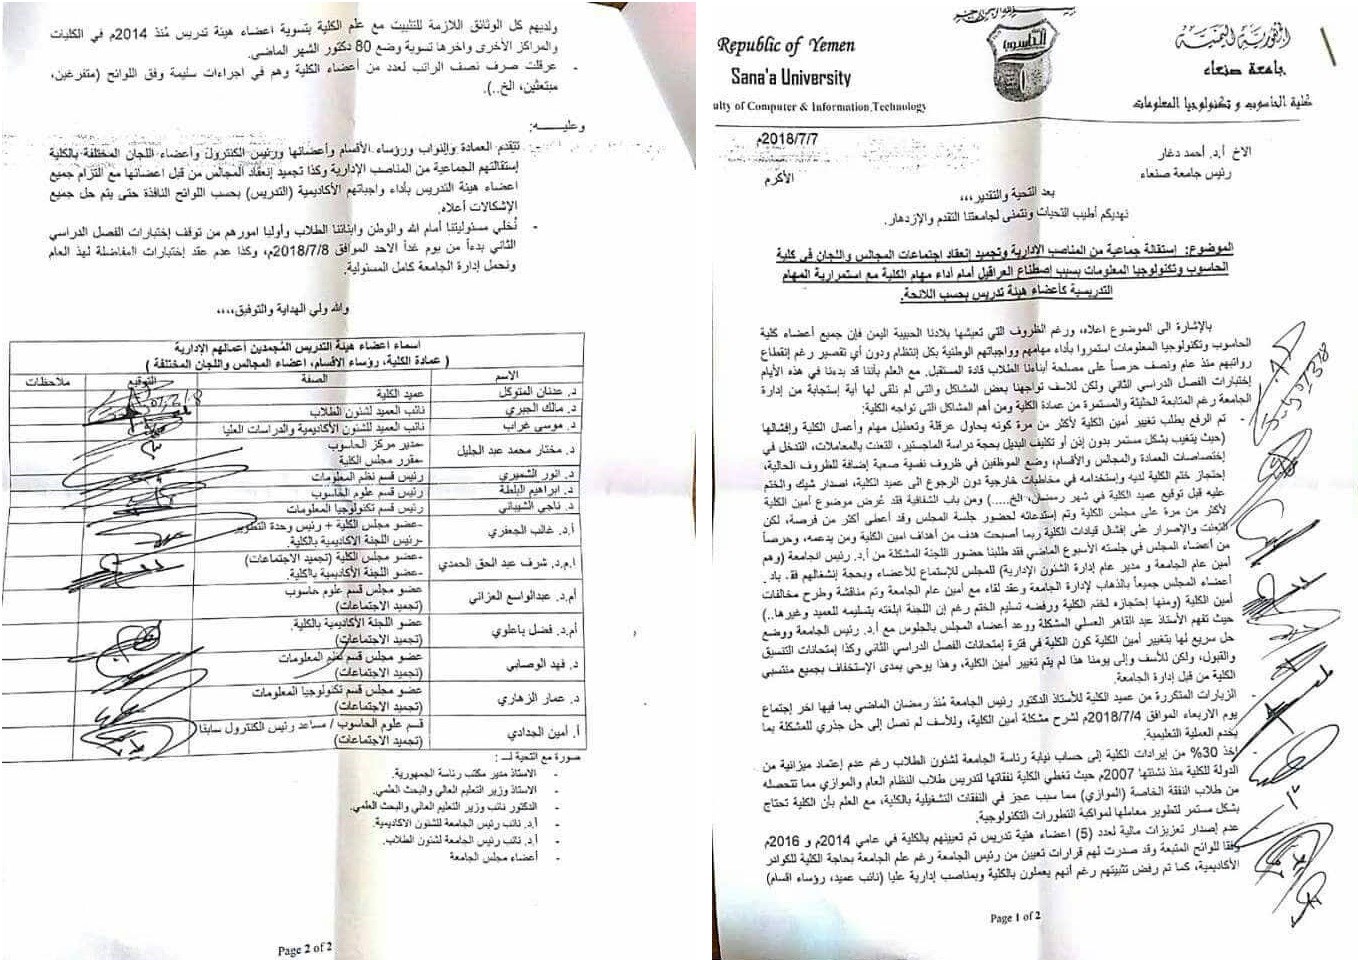 استقالة جماعية لأعضاء هيئة التدريس في كلية الحاسوب بجامعة صنعاء